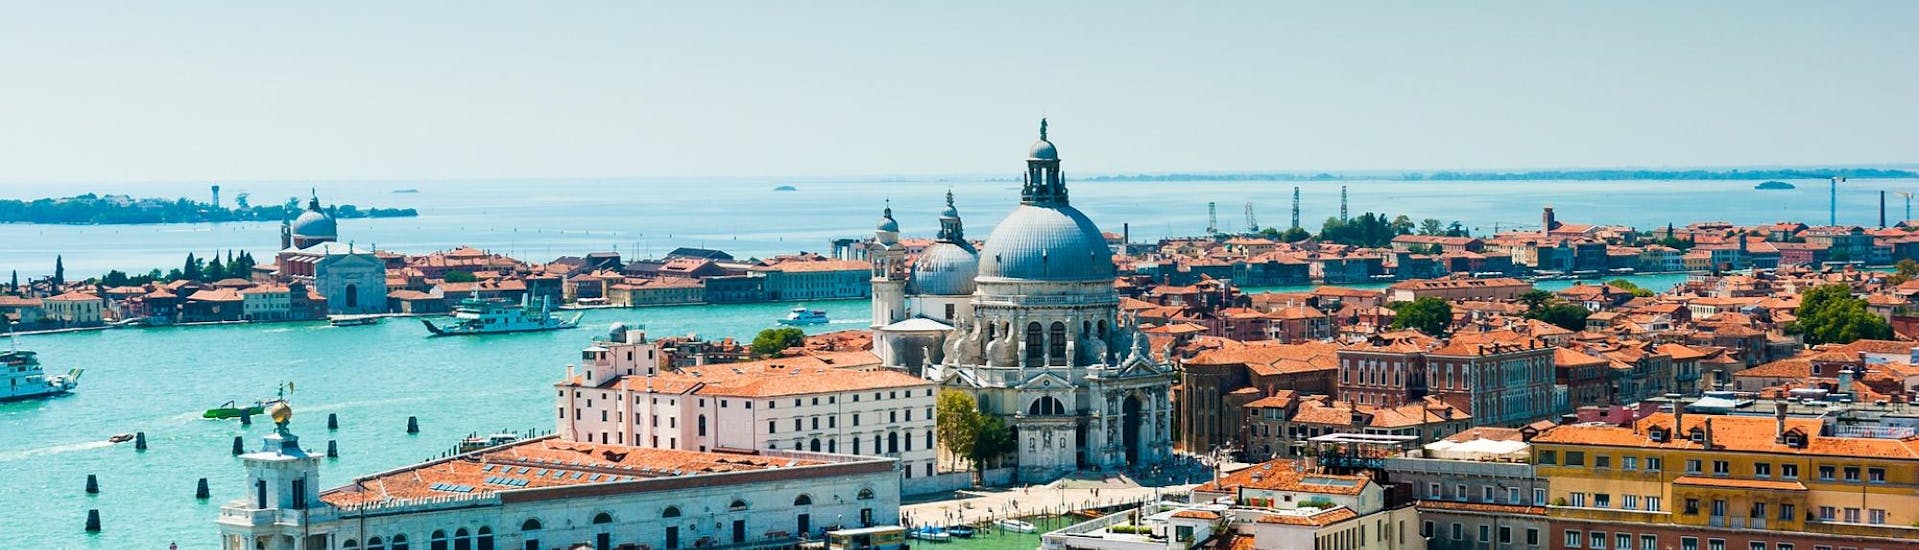 Vista panorámica de Venecia que puedes ver durante el paseo en barco a Murano y Burano con mañana en Venecia, con Il Doge di Venezia.